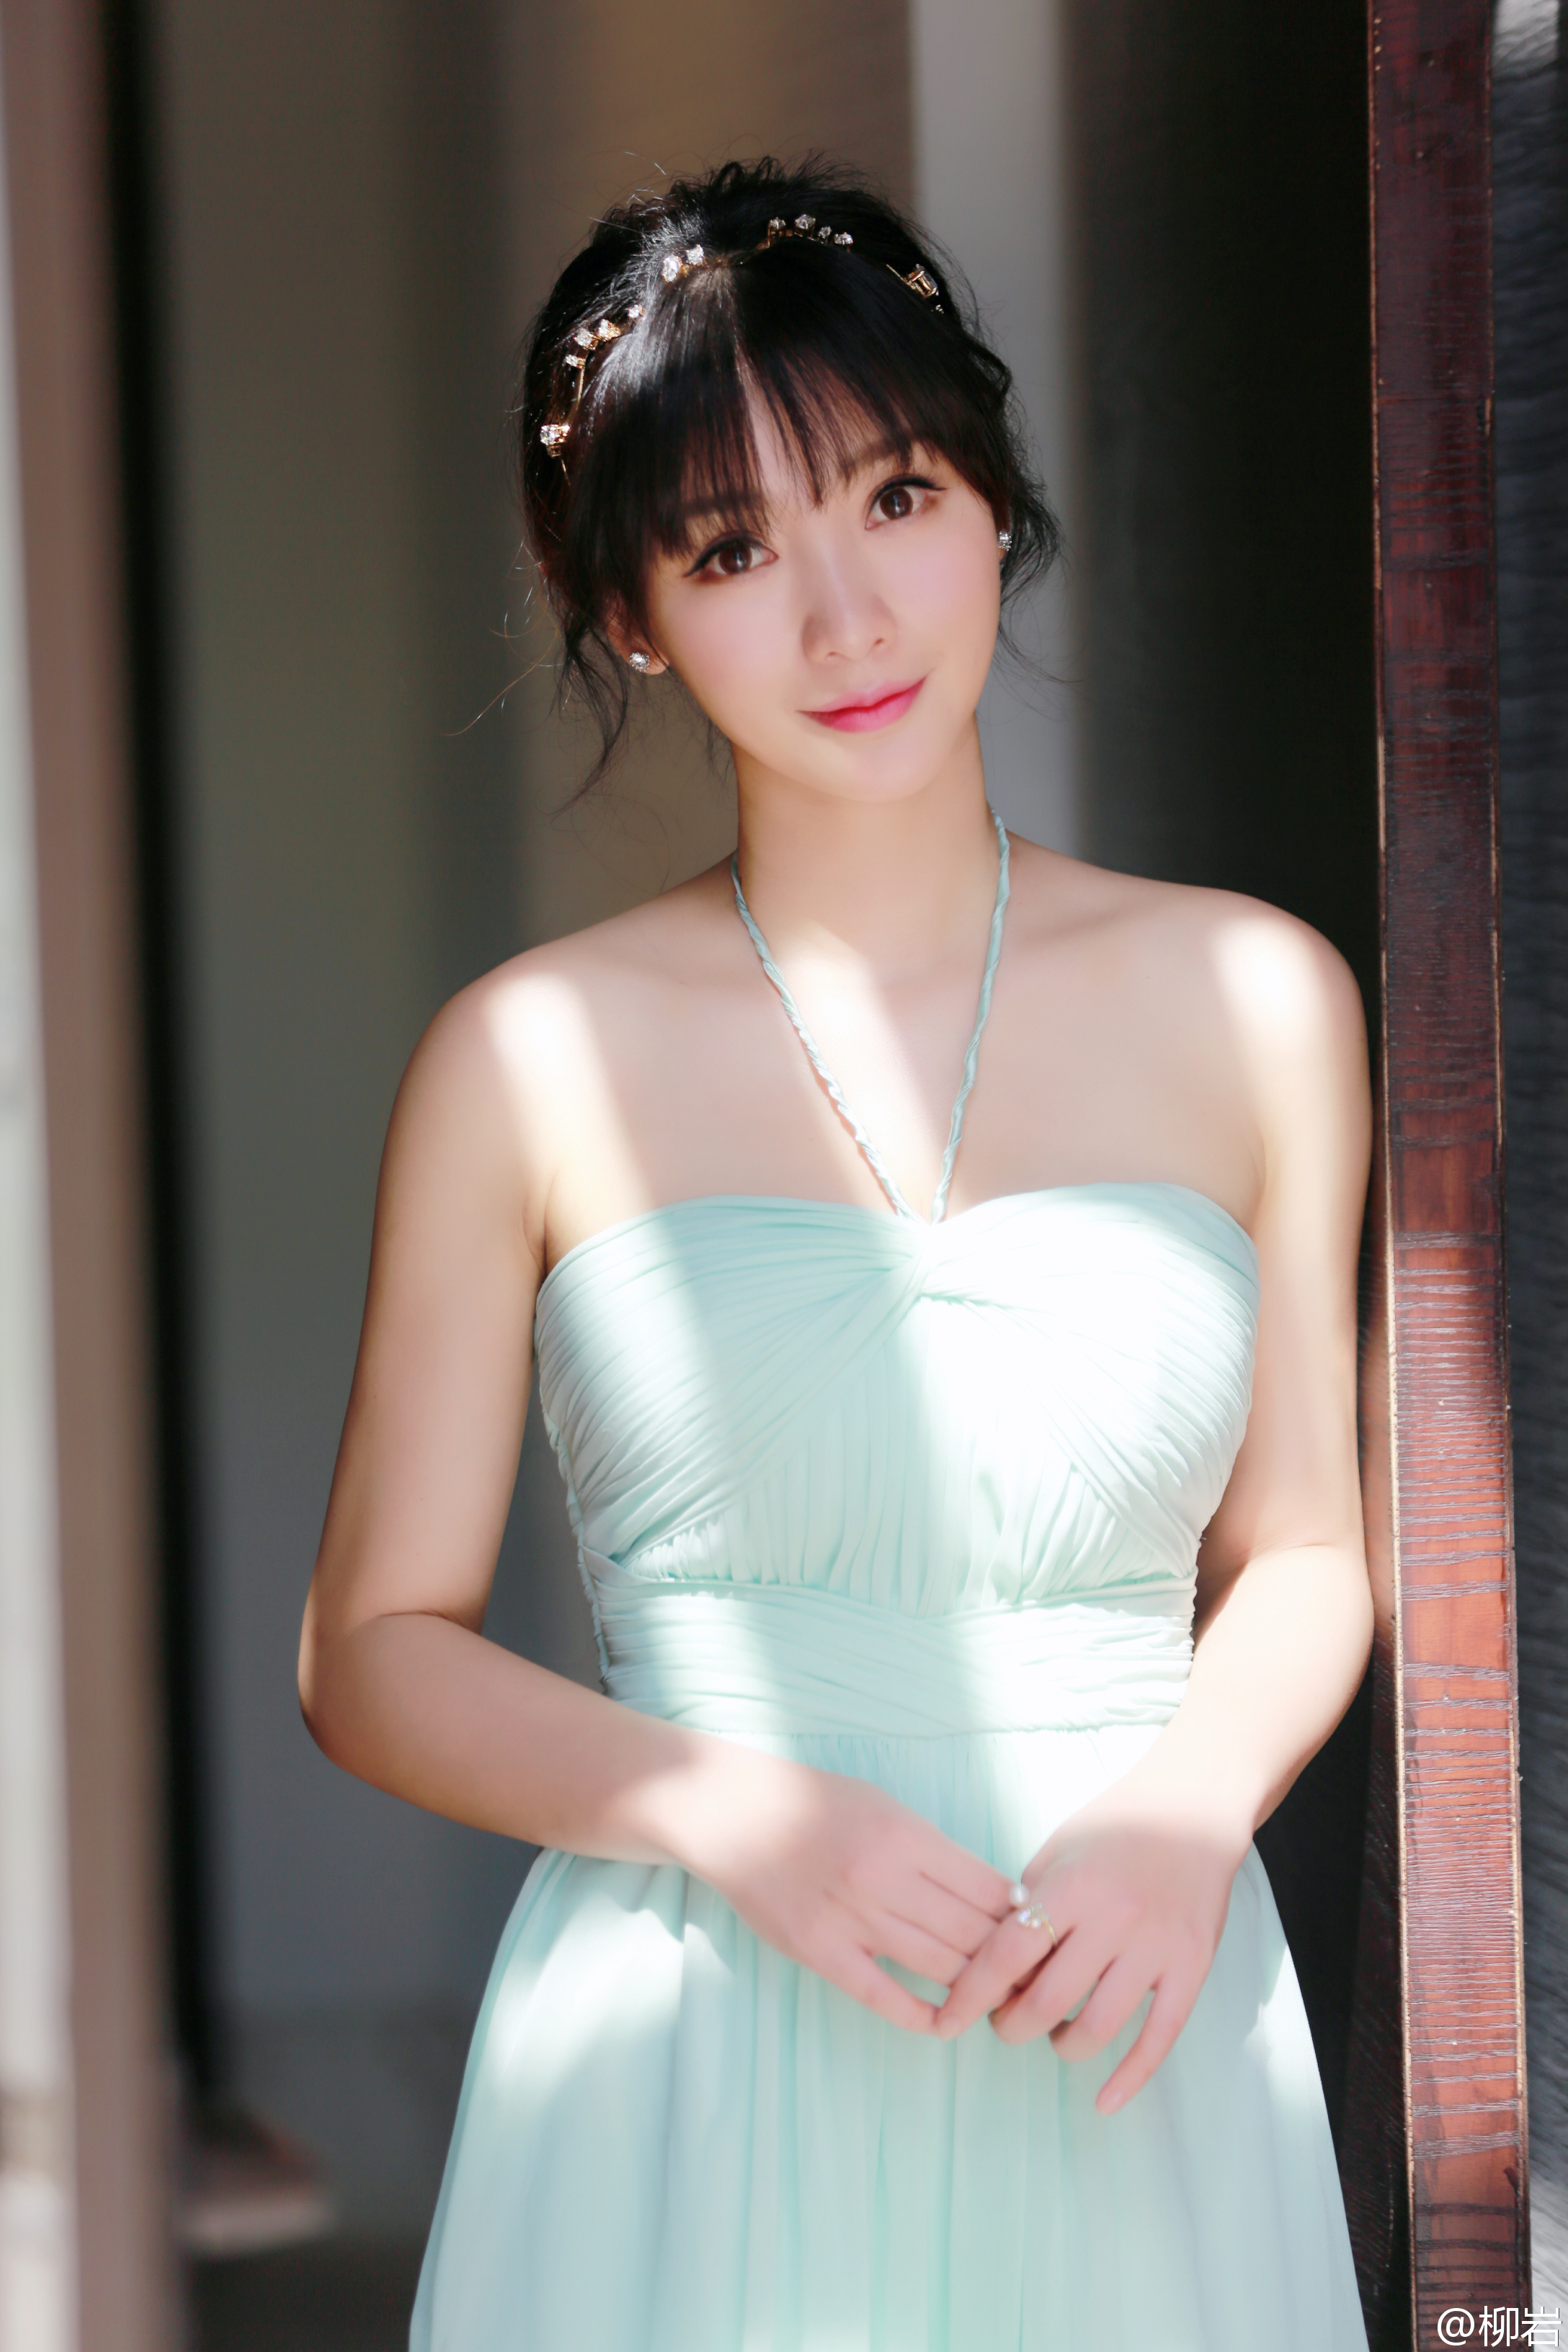 Liuyan Blue Dress Looking At Viewer Sunlight Outdoors Chinese 2176x3264